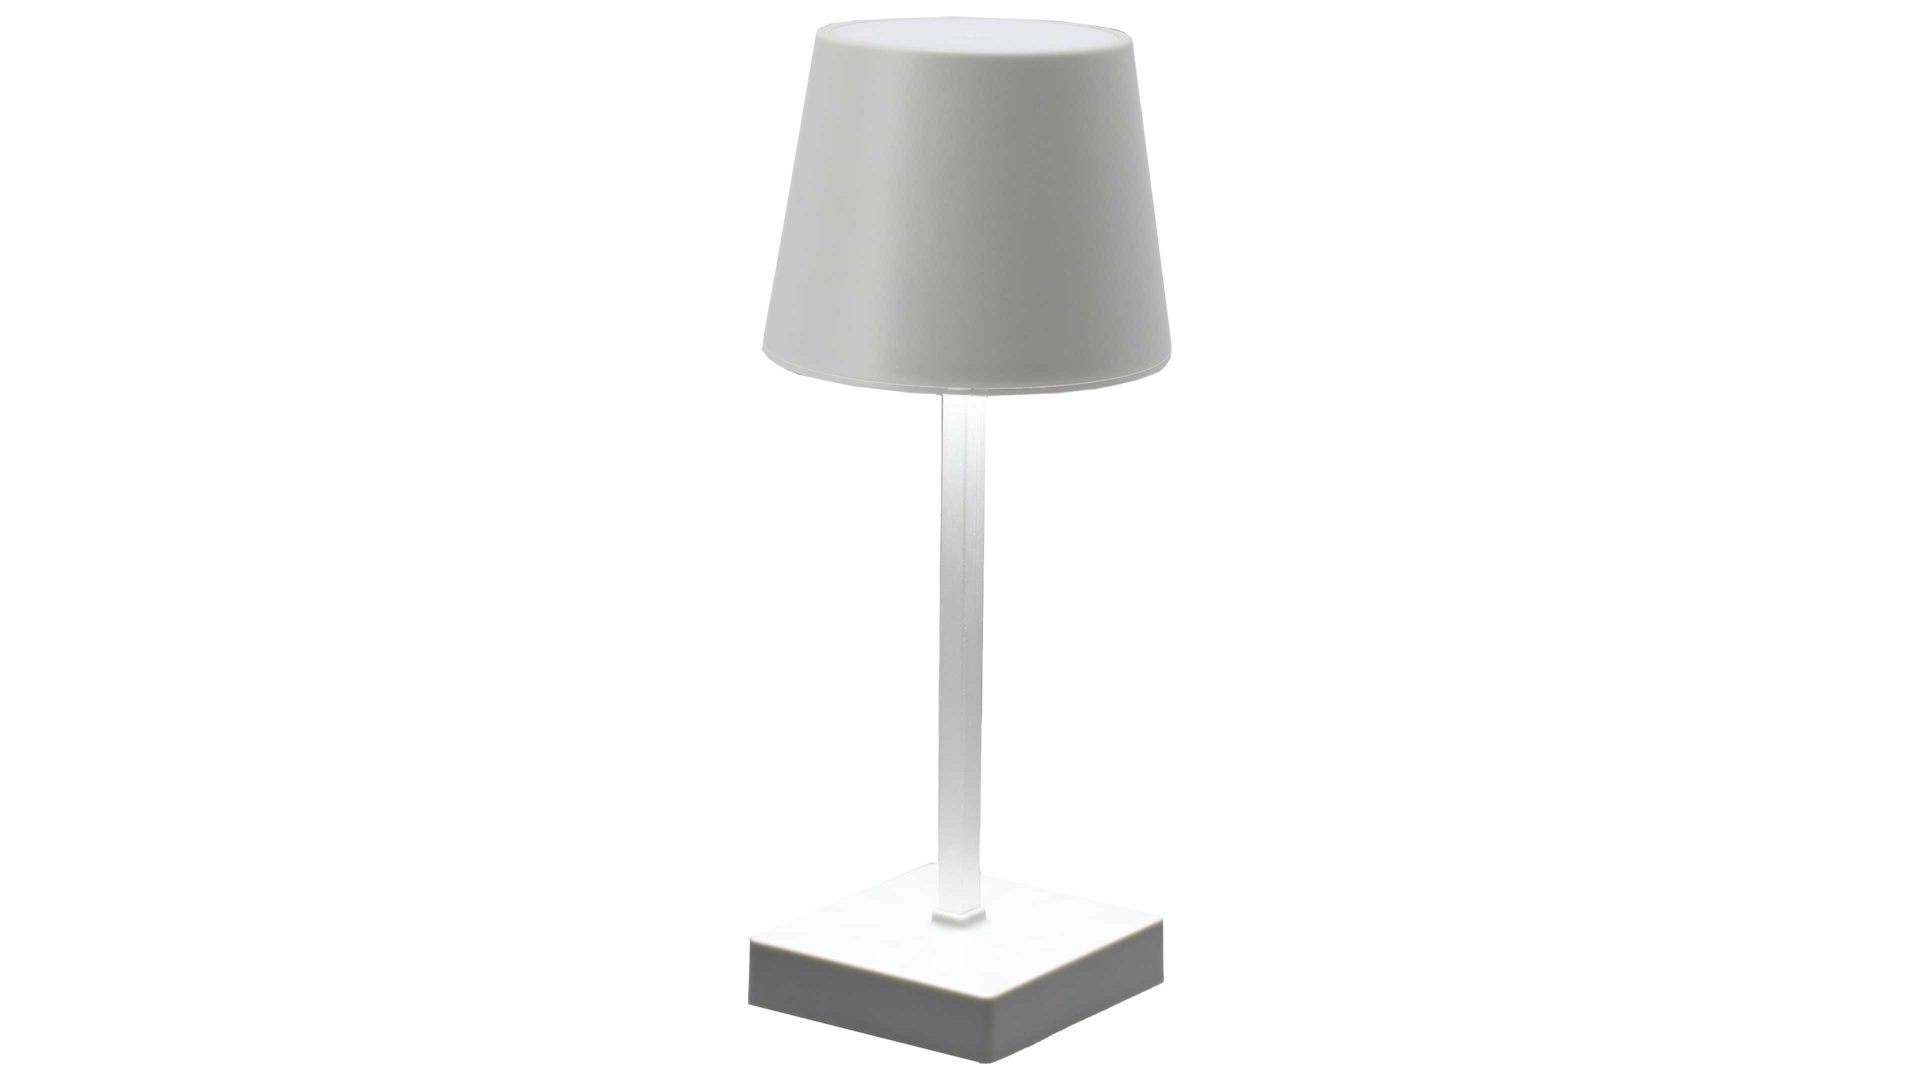 Tischleuchte Cepewa aus Kunststoff in Weiß LED Tischleuchte weißer Kunststoff - Höhe ca. 26 cm